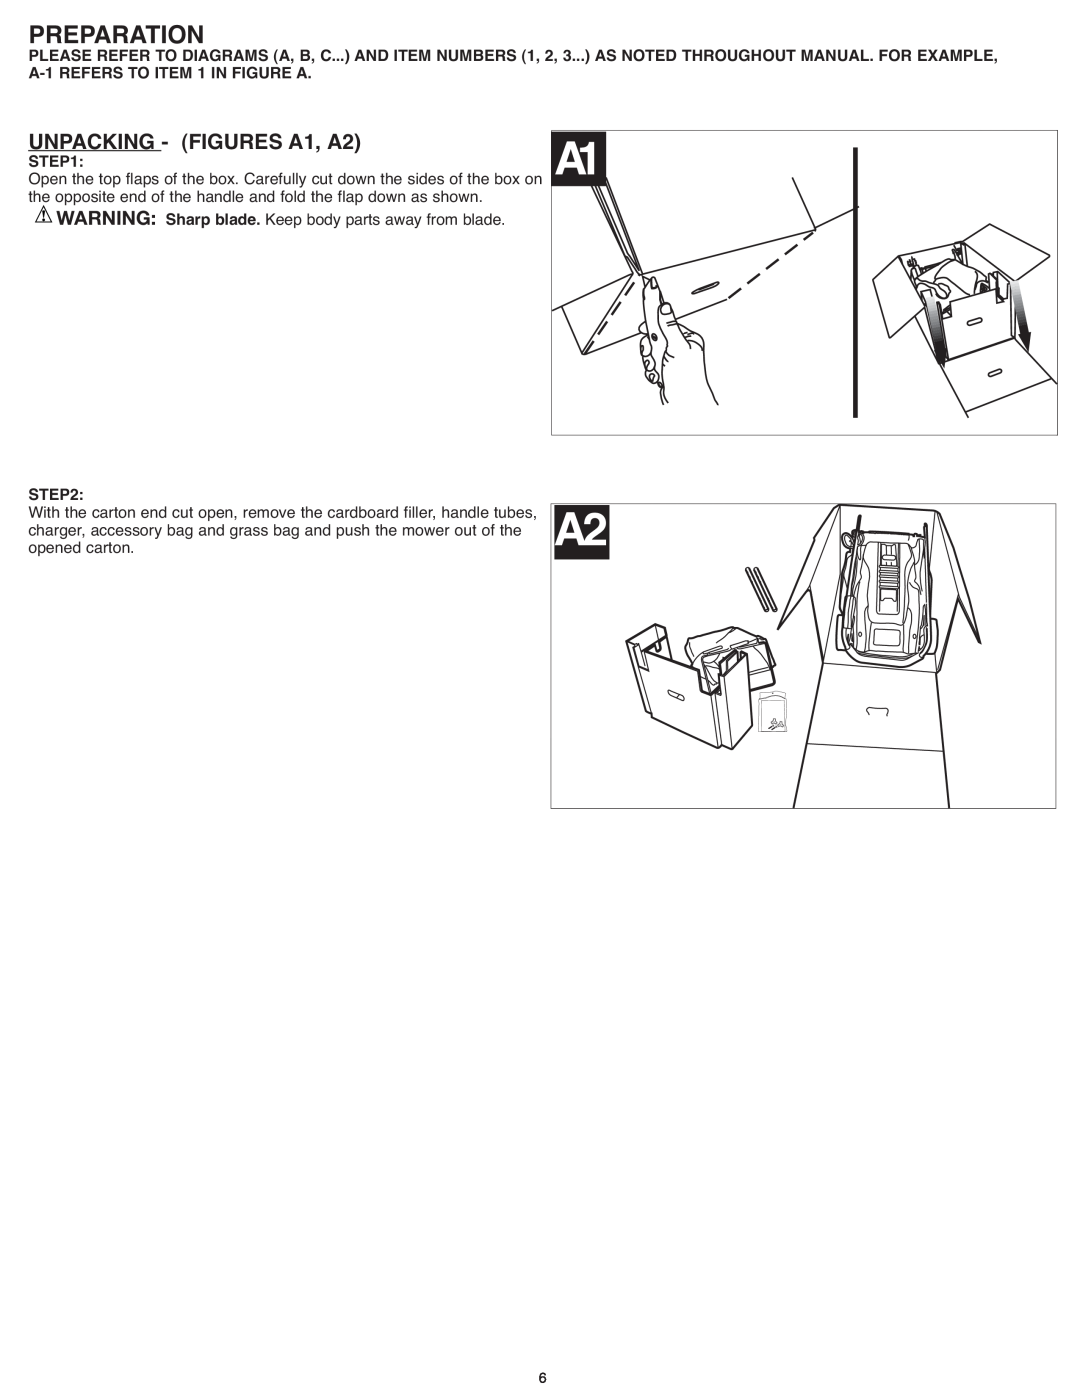 Black & Decker CM 1836, CM1836R instruction manual Preparation, UNPACKING - FIGURES A1, A2 